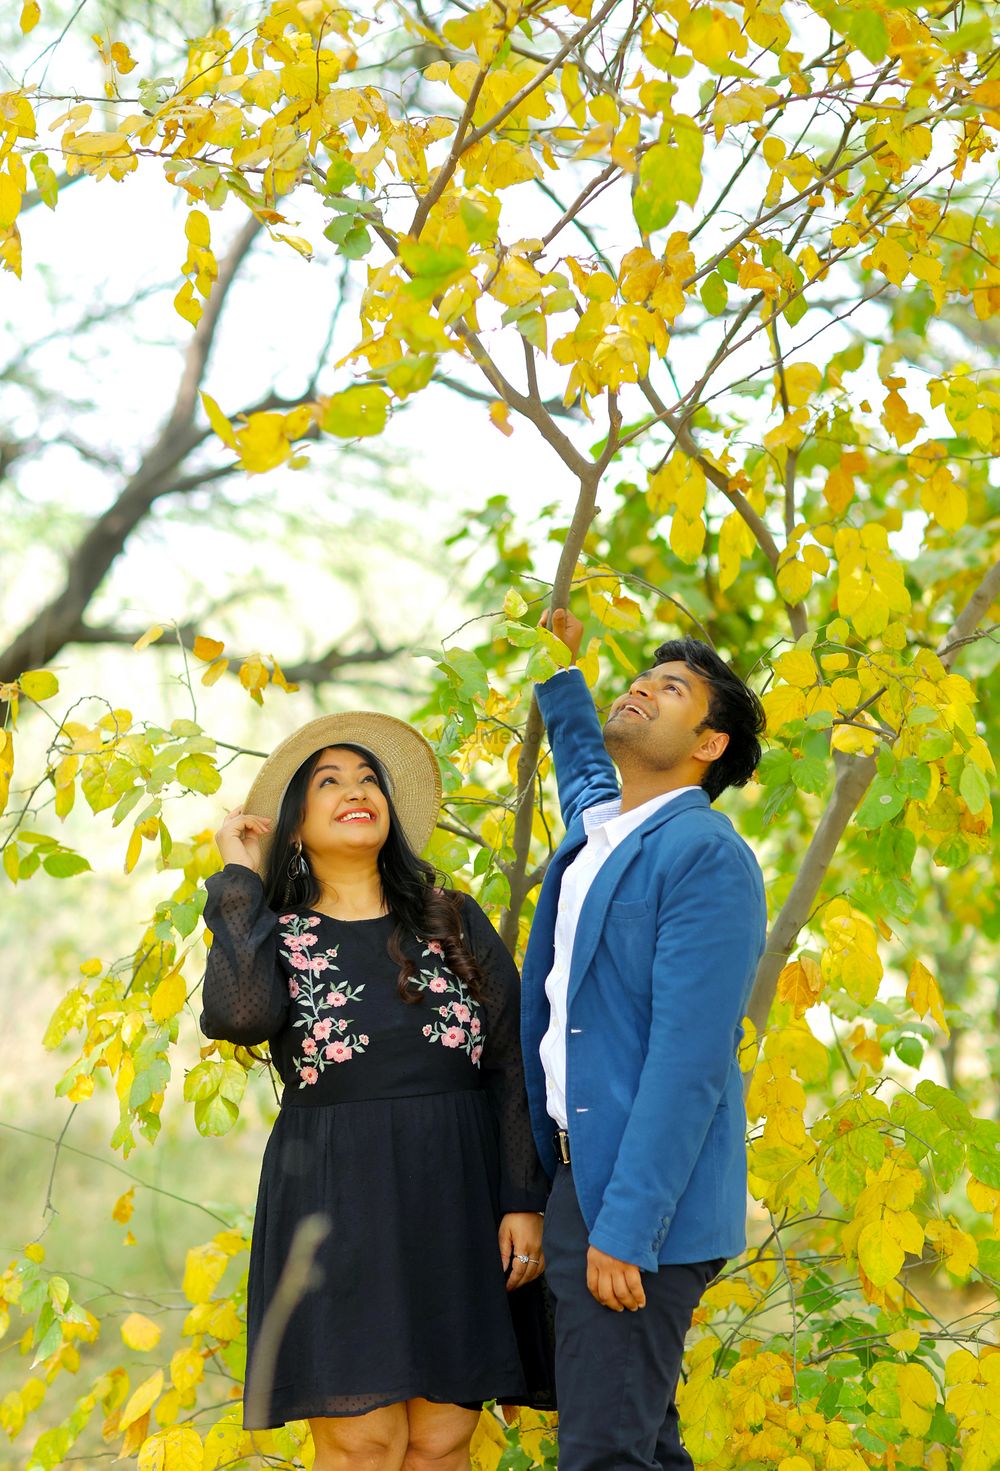 Photo From Pre Wedding of Shivam & Mahima in Photo Paradise New Delhi - By Classy Clicks Photography